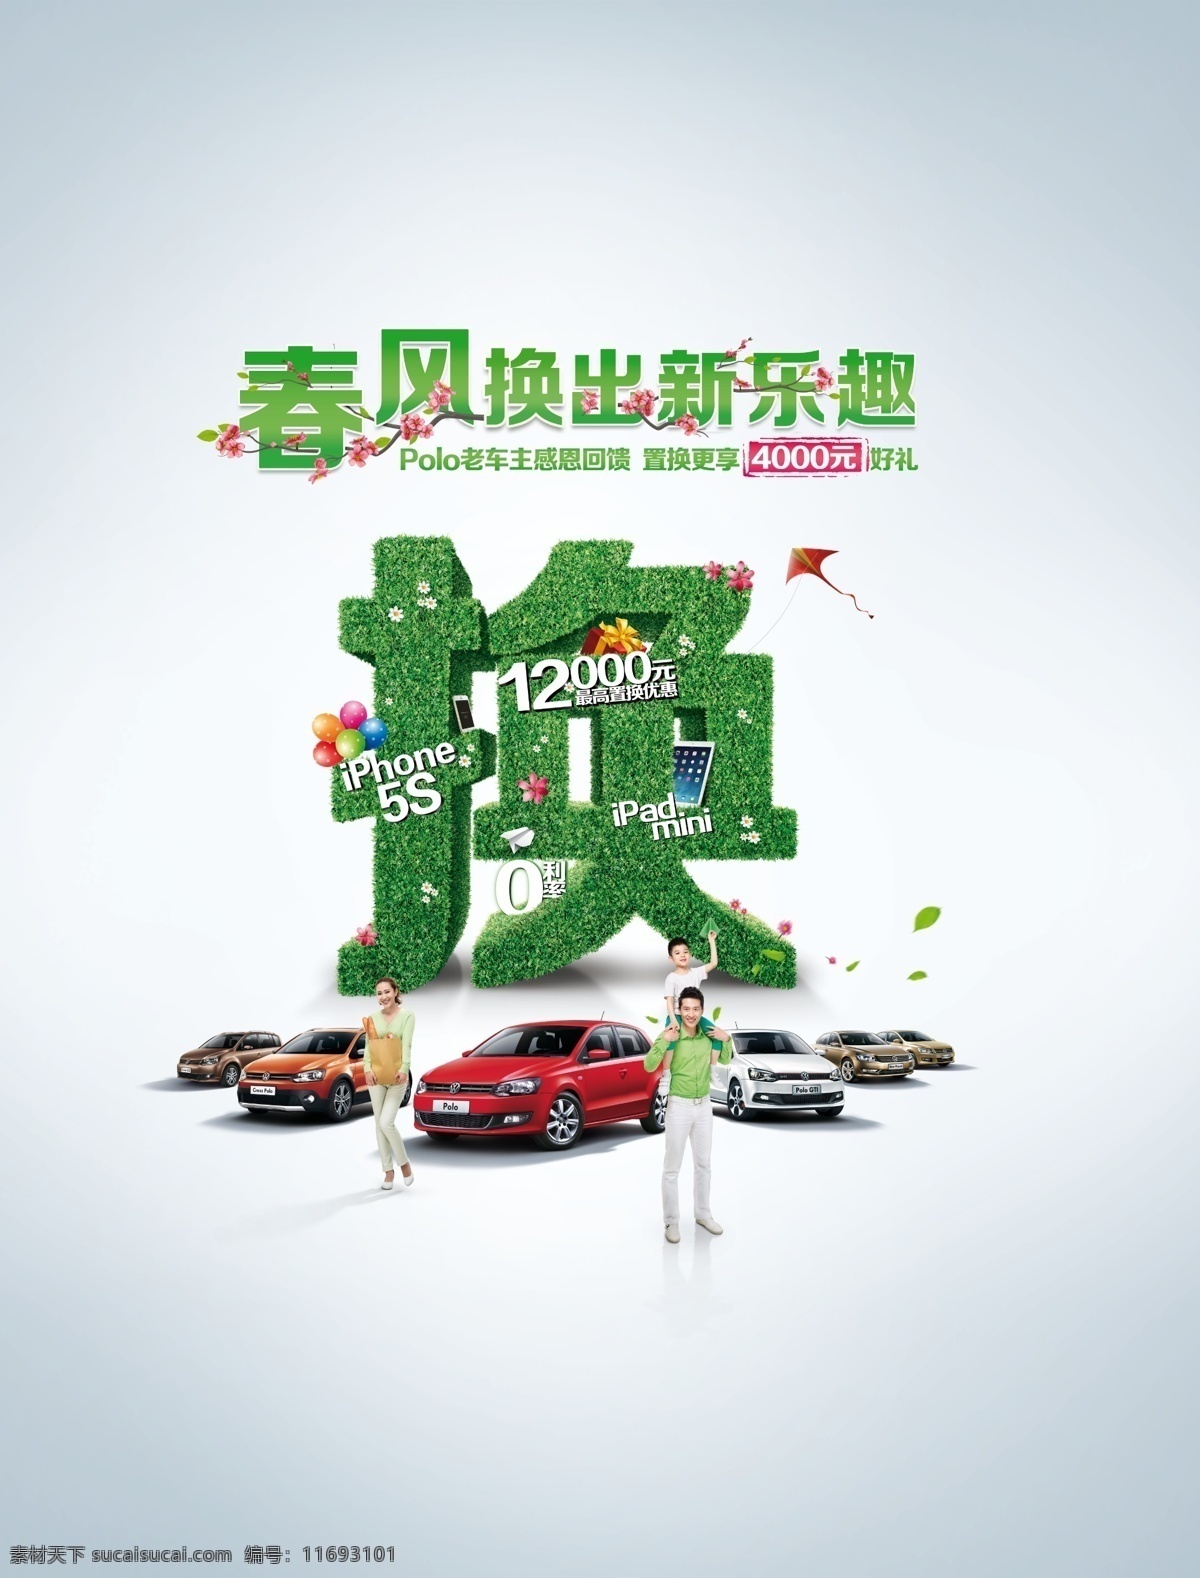 上海大众置换 polo 上海大众 大众 波罗 置换 汽车 现代科技 交通工具 白色